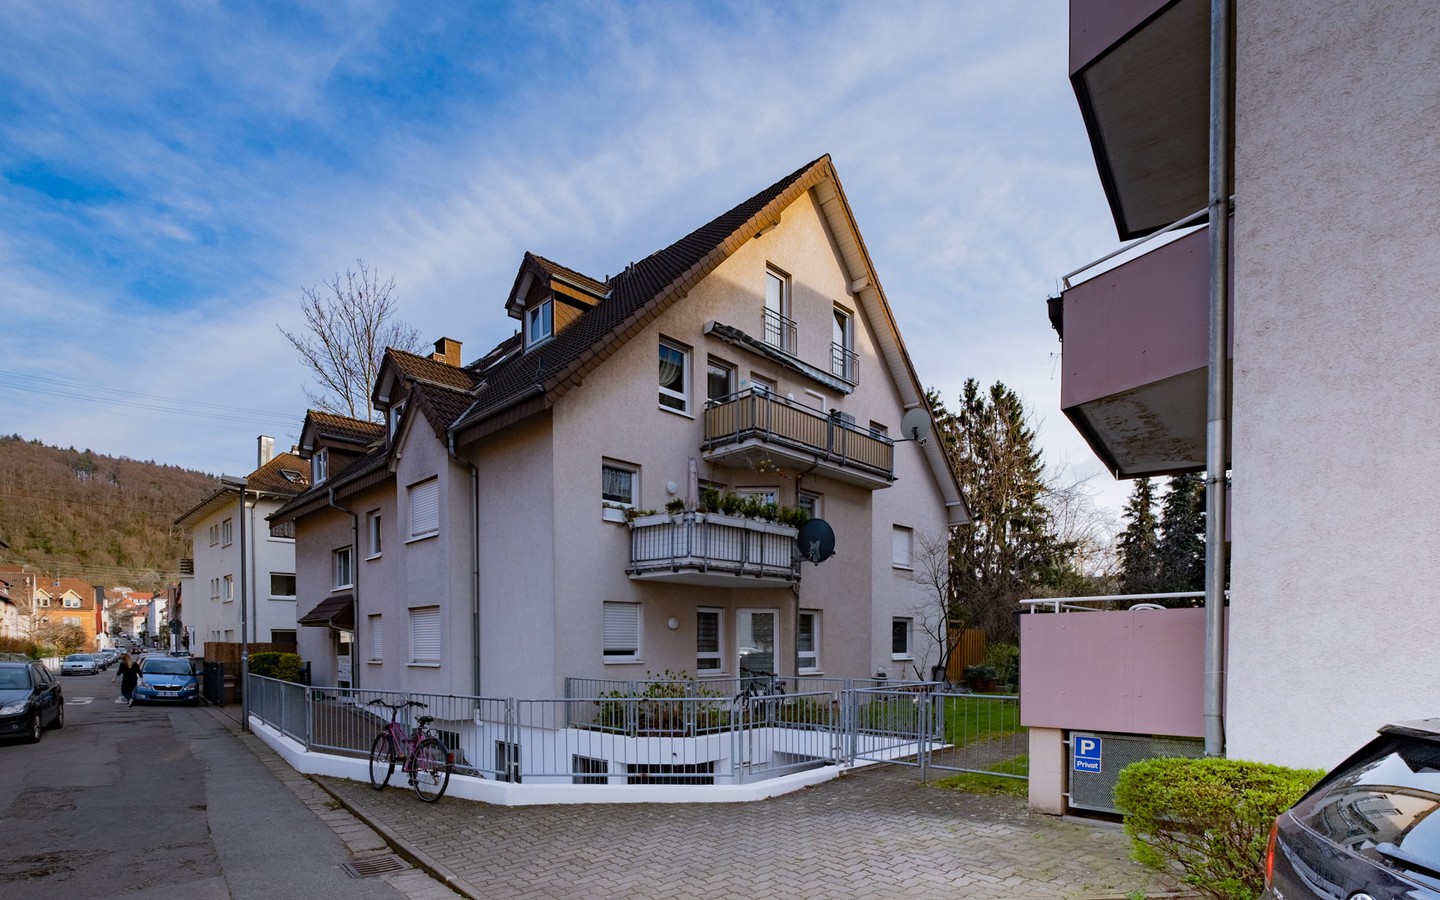 Ansicht - Behaglich wohnen: Attraktive 4-Zimmer-Maisonette mit Terrasse und TG-Stellplatz in Rohrbach